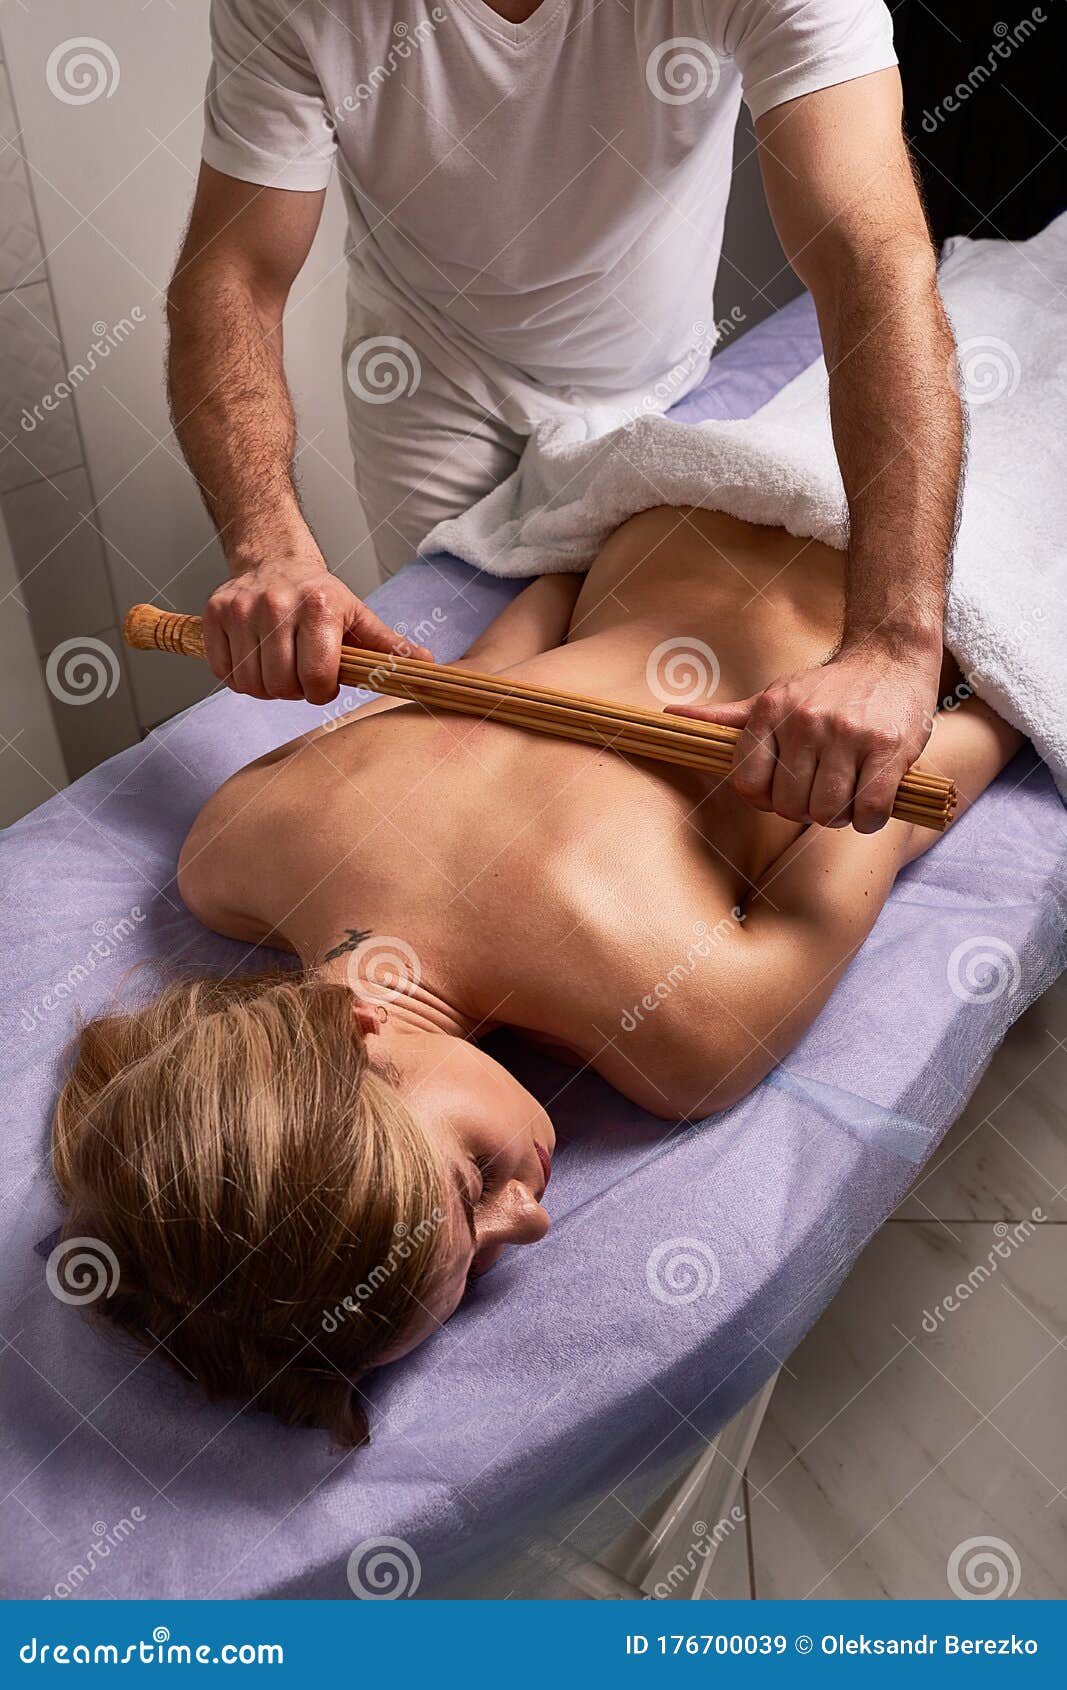 japanese naked massage